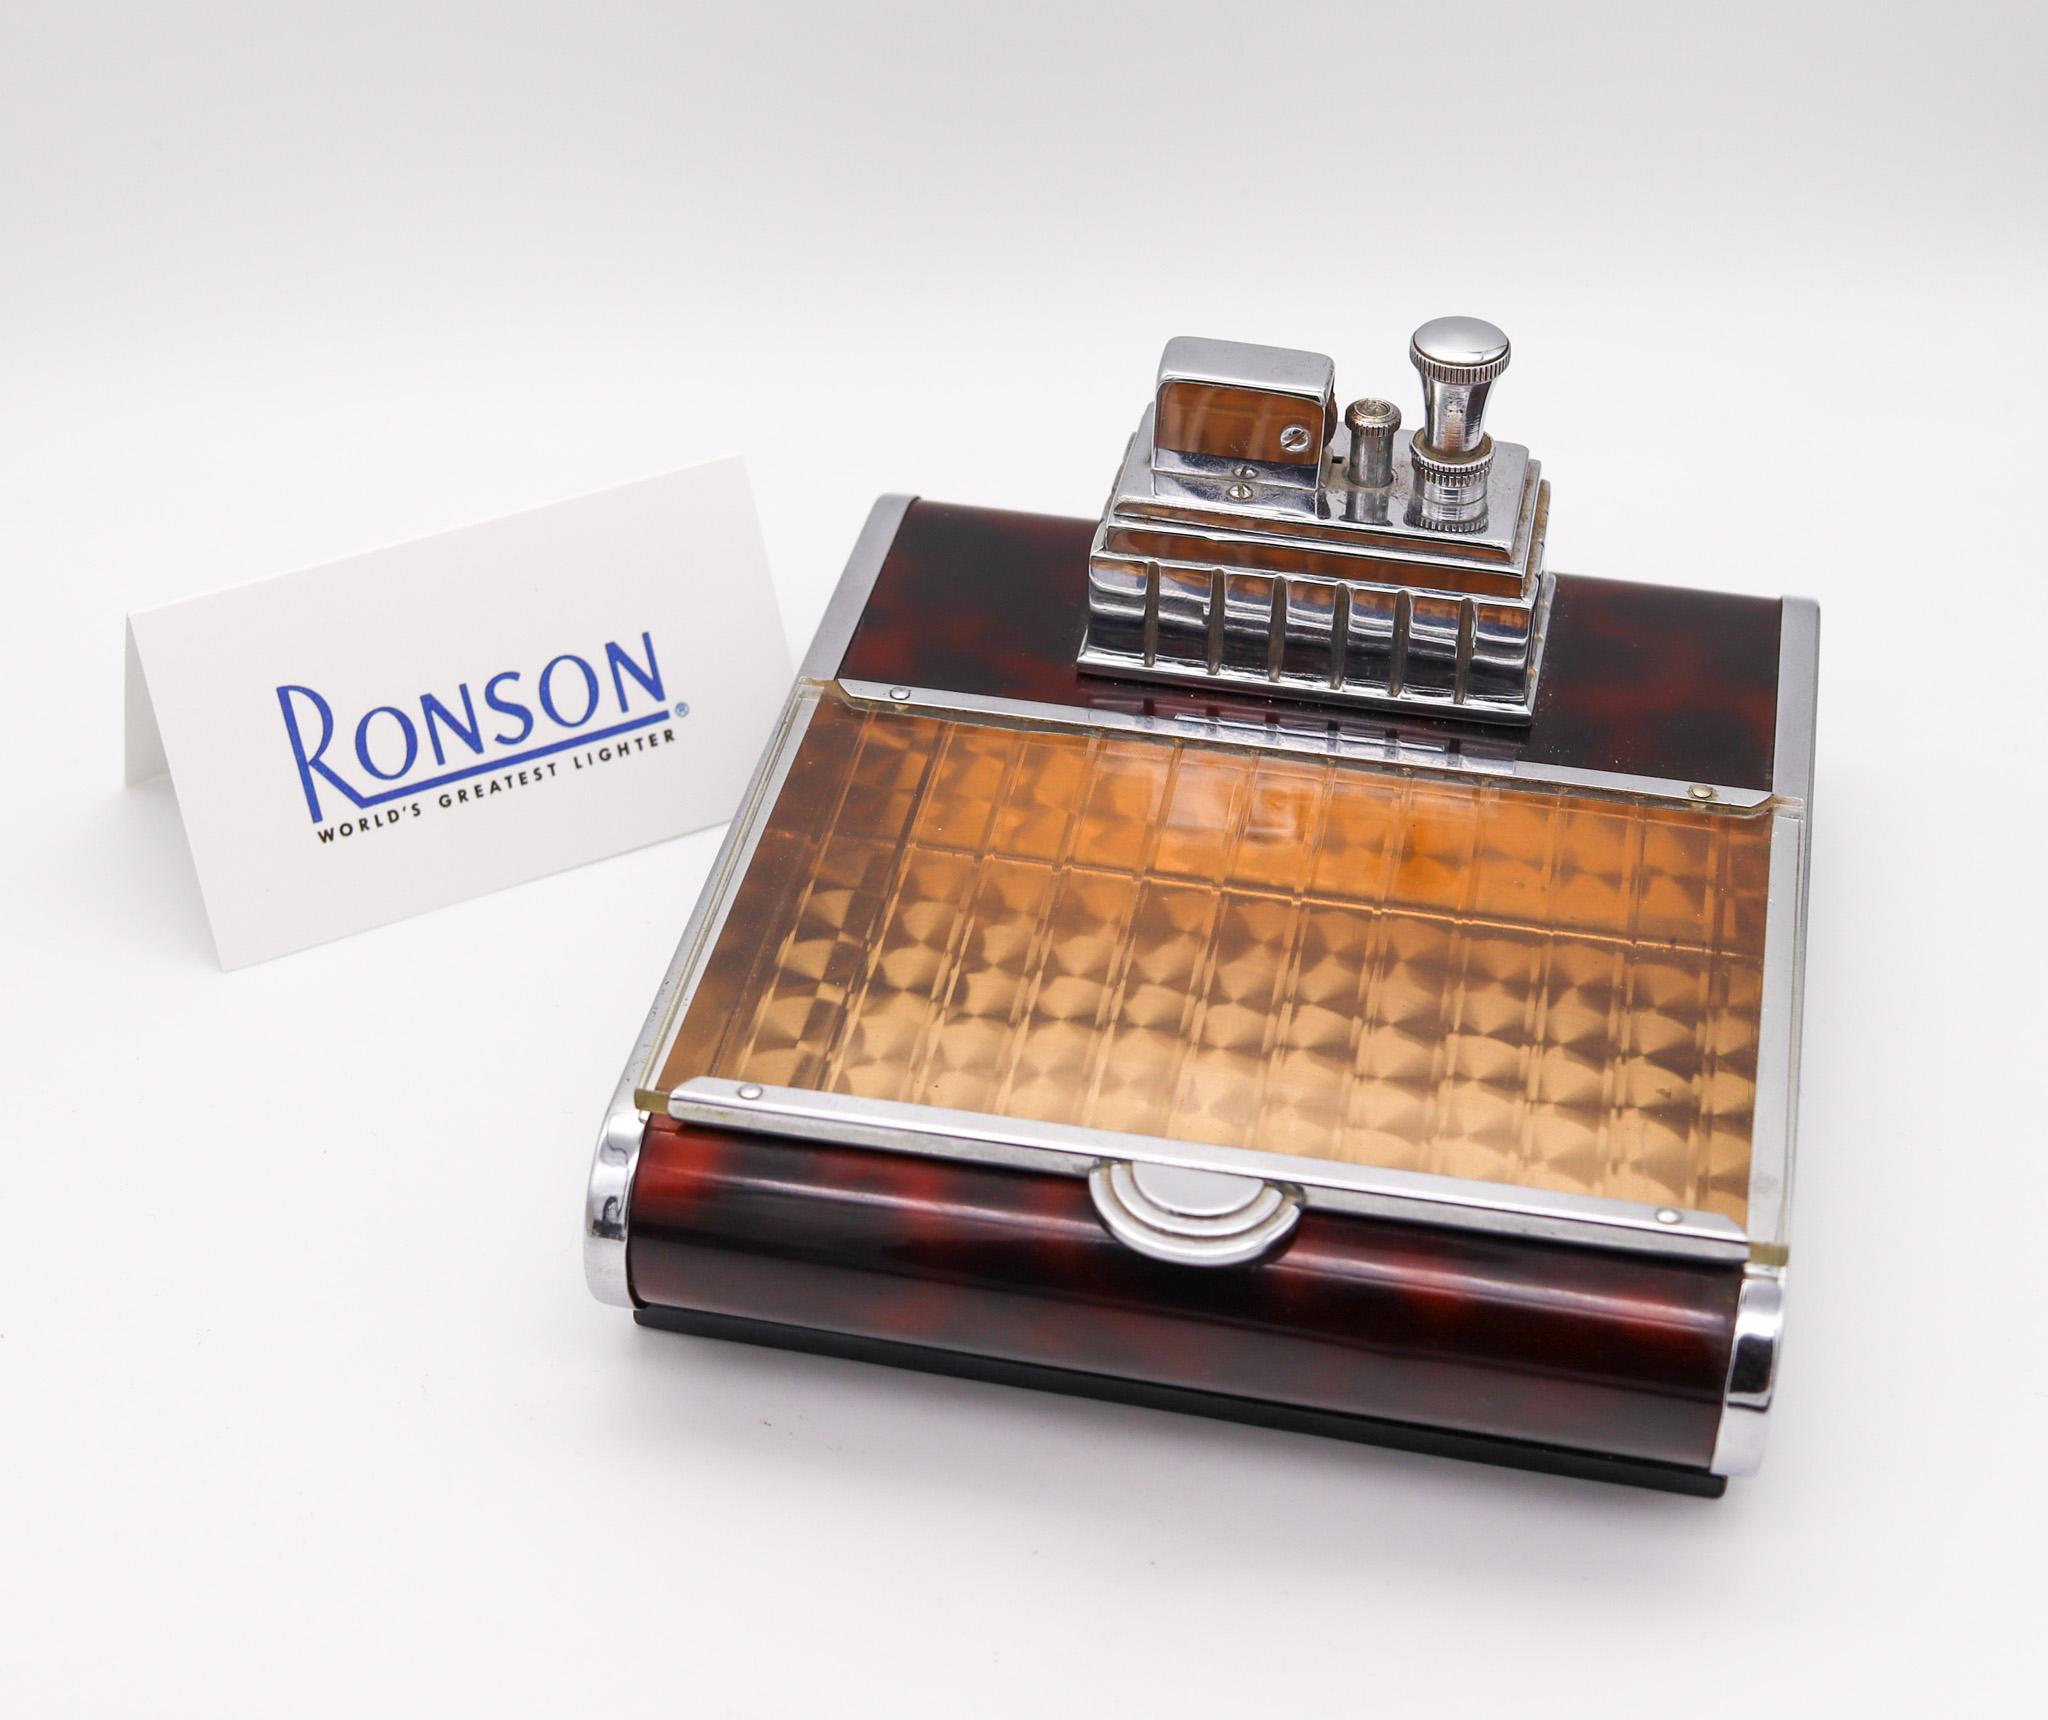 Art-déco-Spenderdose mit Feuerzeug von Ronson.

Eine außergewöhnliche und schöne Schreibtisch-Box, die in New Jersey Vereinigten Staaten von The Ronson Metal Works Co. während der Art-Deco-Periode, zurück in die 1939. Es handelt sich um eine sehr